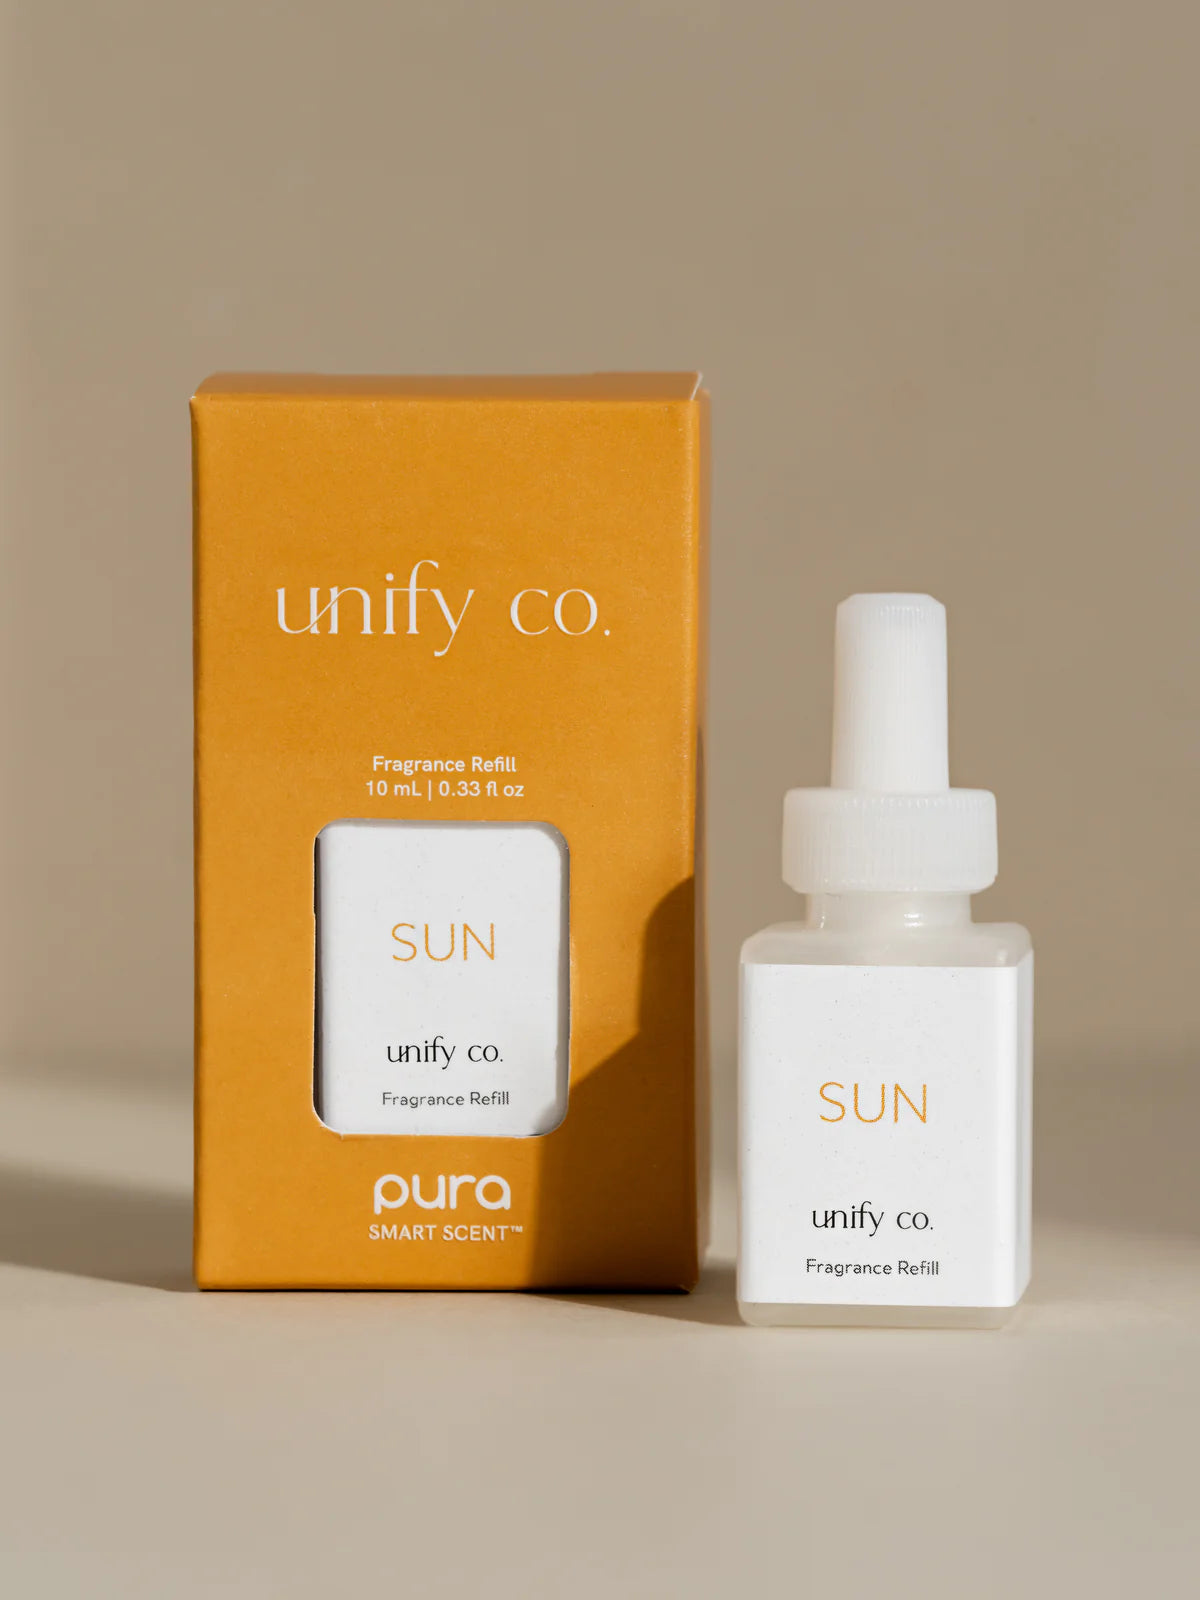 Pura Diffuser Refill | Sun (Unify Co.)